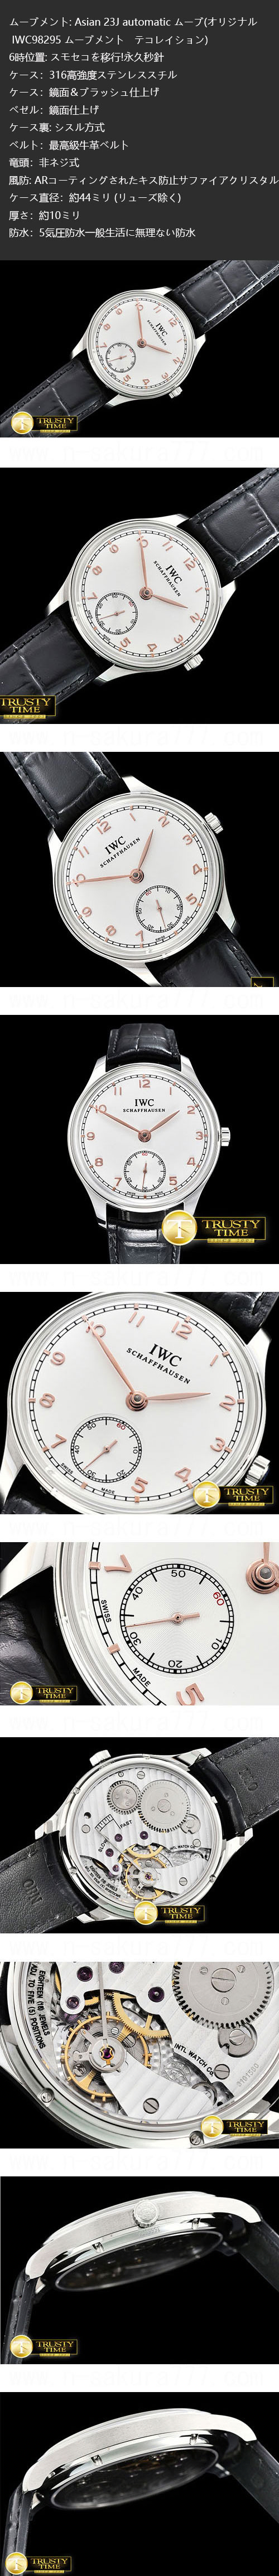 【メンズ腕時計】IWC ポルトギーゼ・ハンドワインド Ref. IW5454 スーパーコピー時計